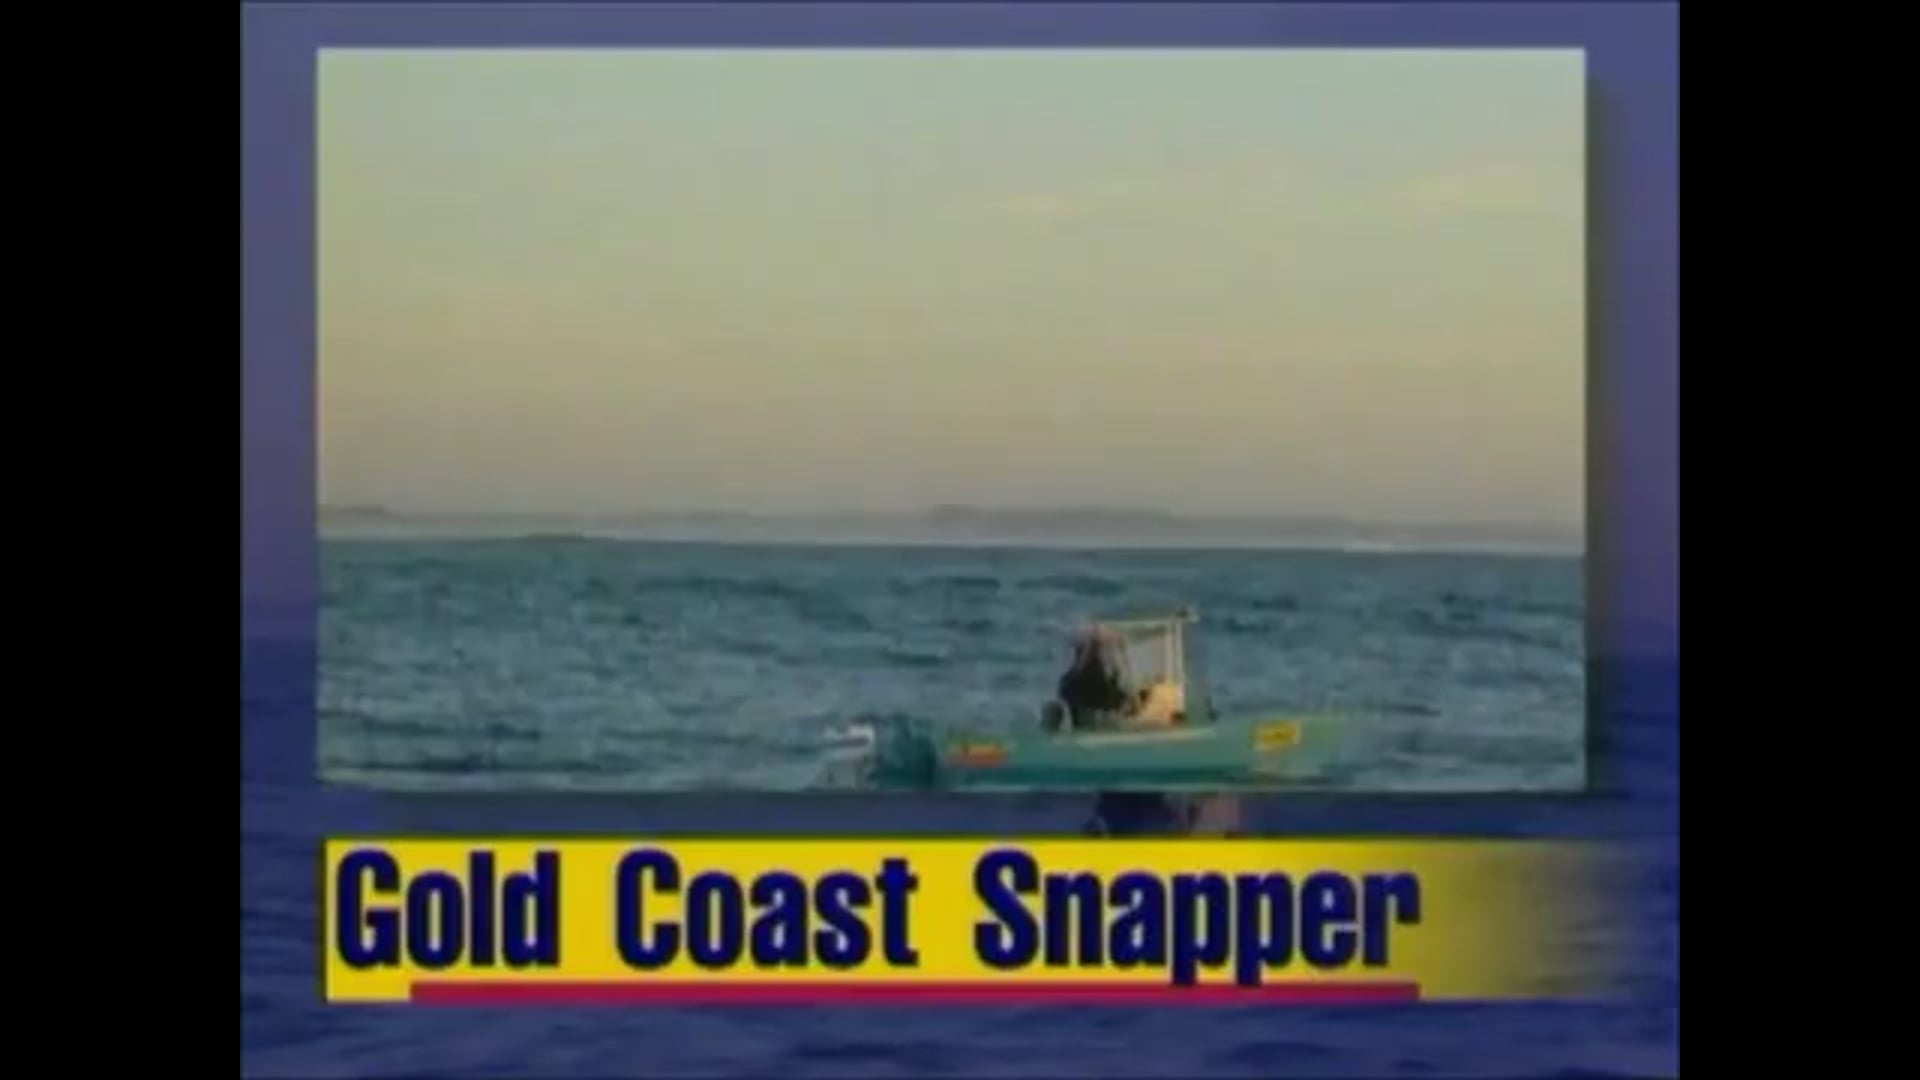 Gold Coast Snapper